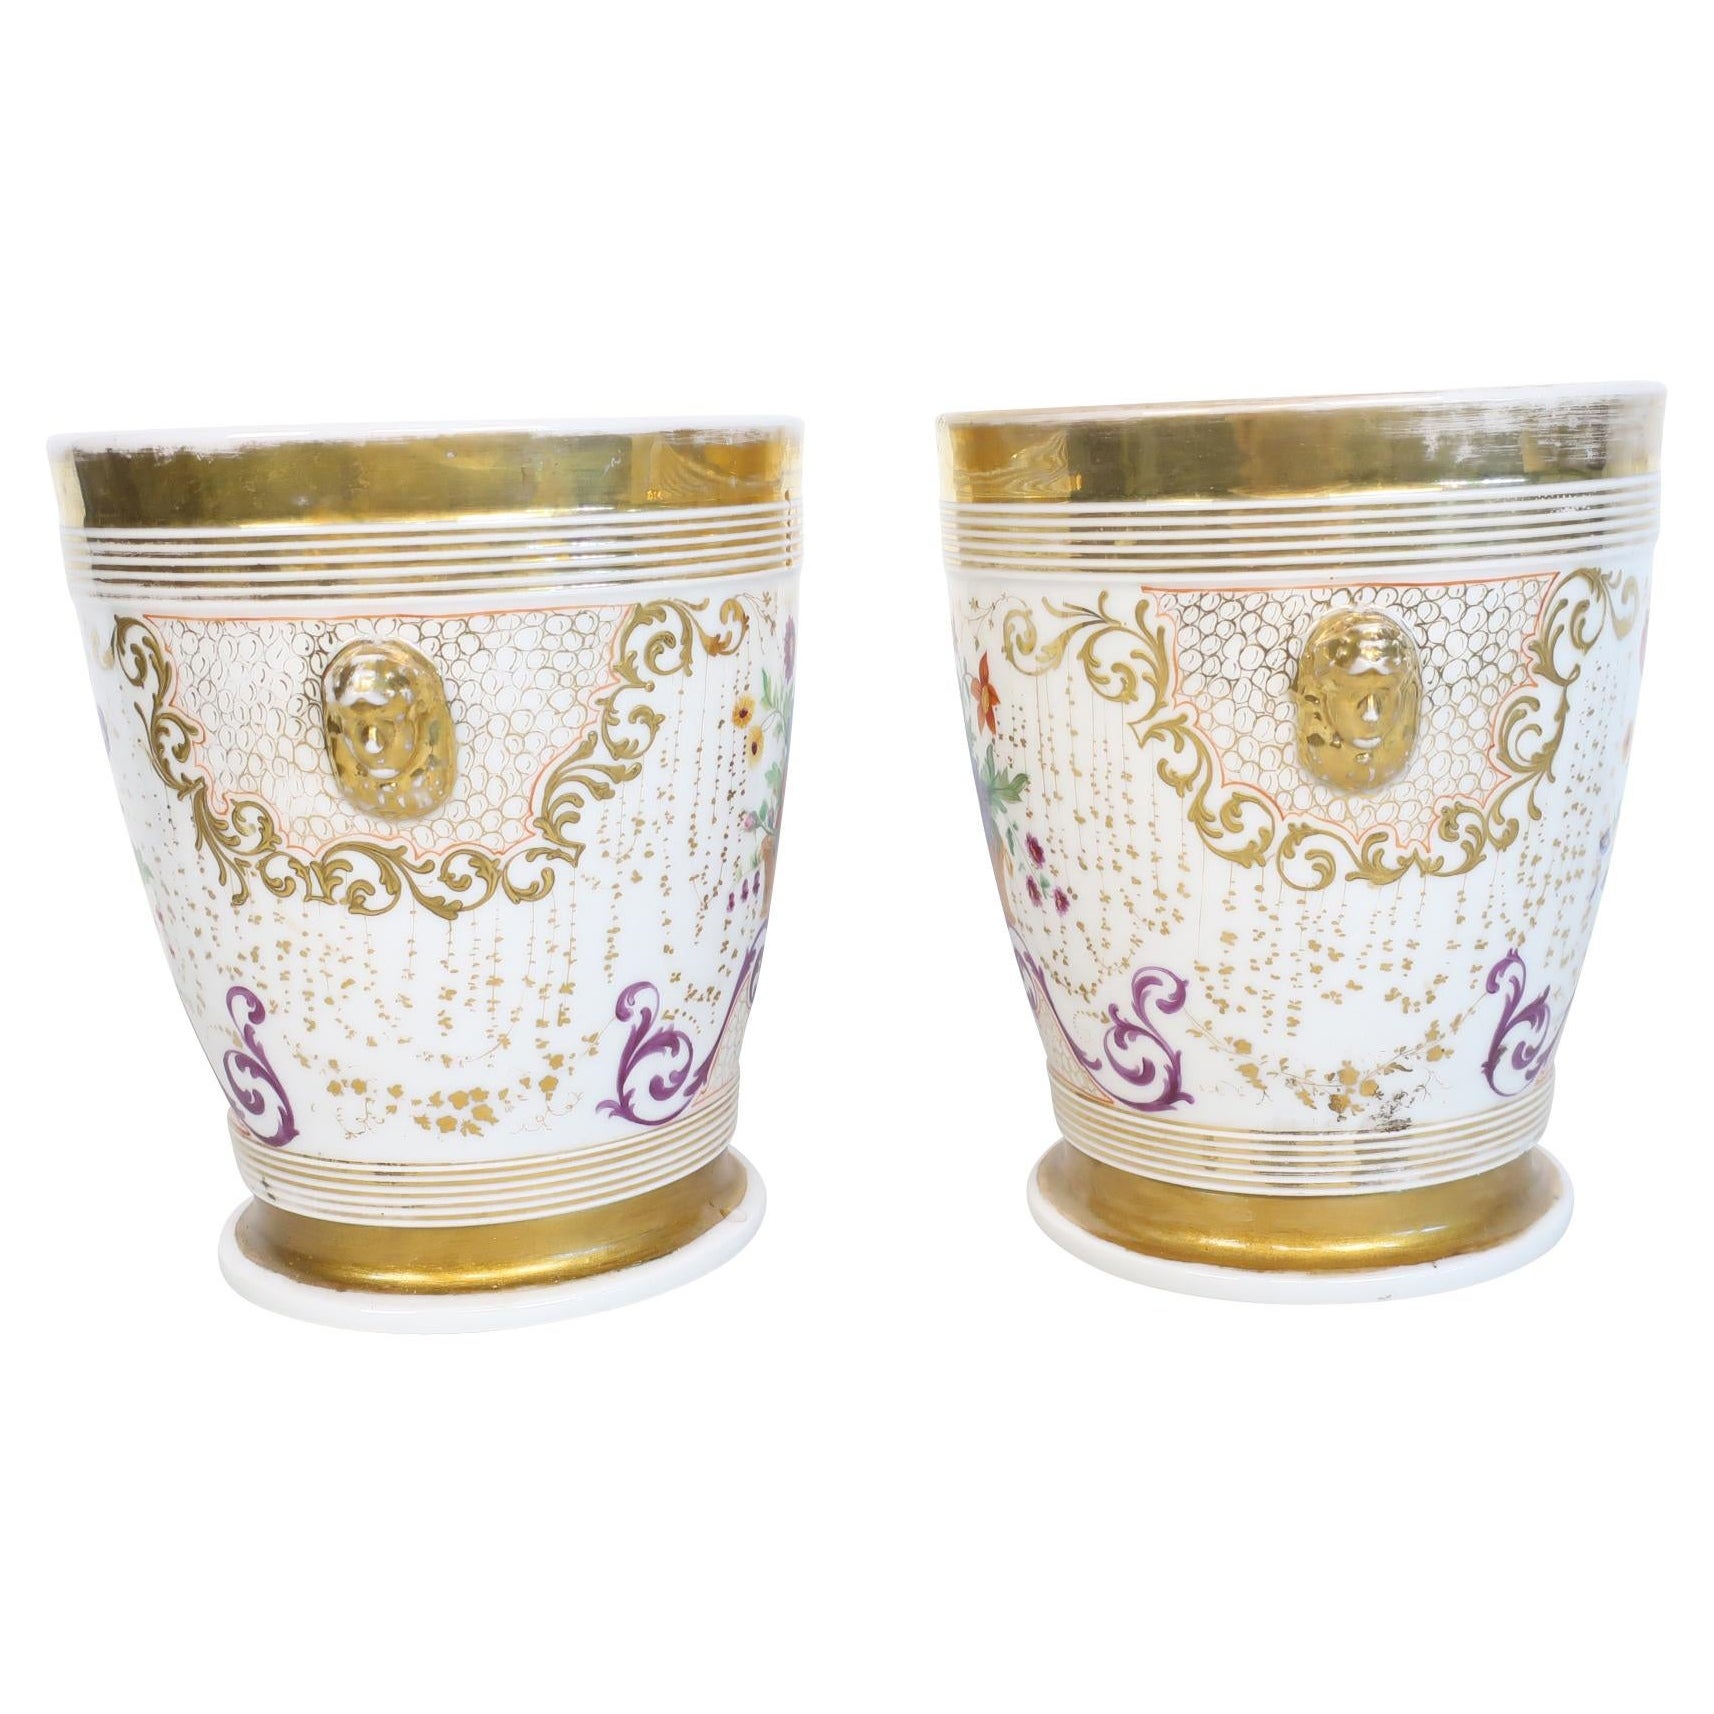 19th Century White and Floral Porcelain de Paris Jardiniere/Wine Coolers